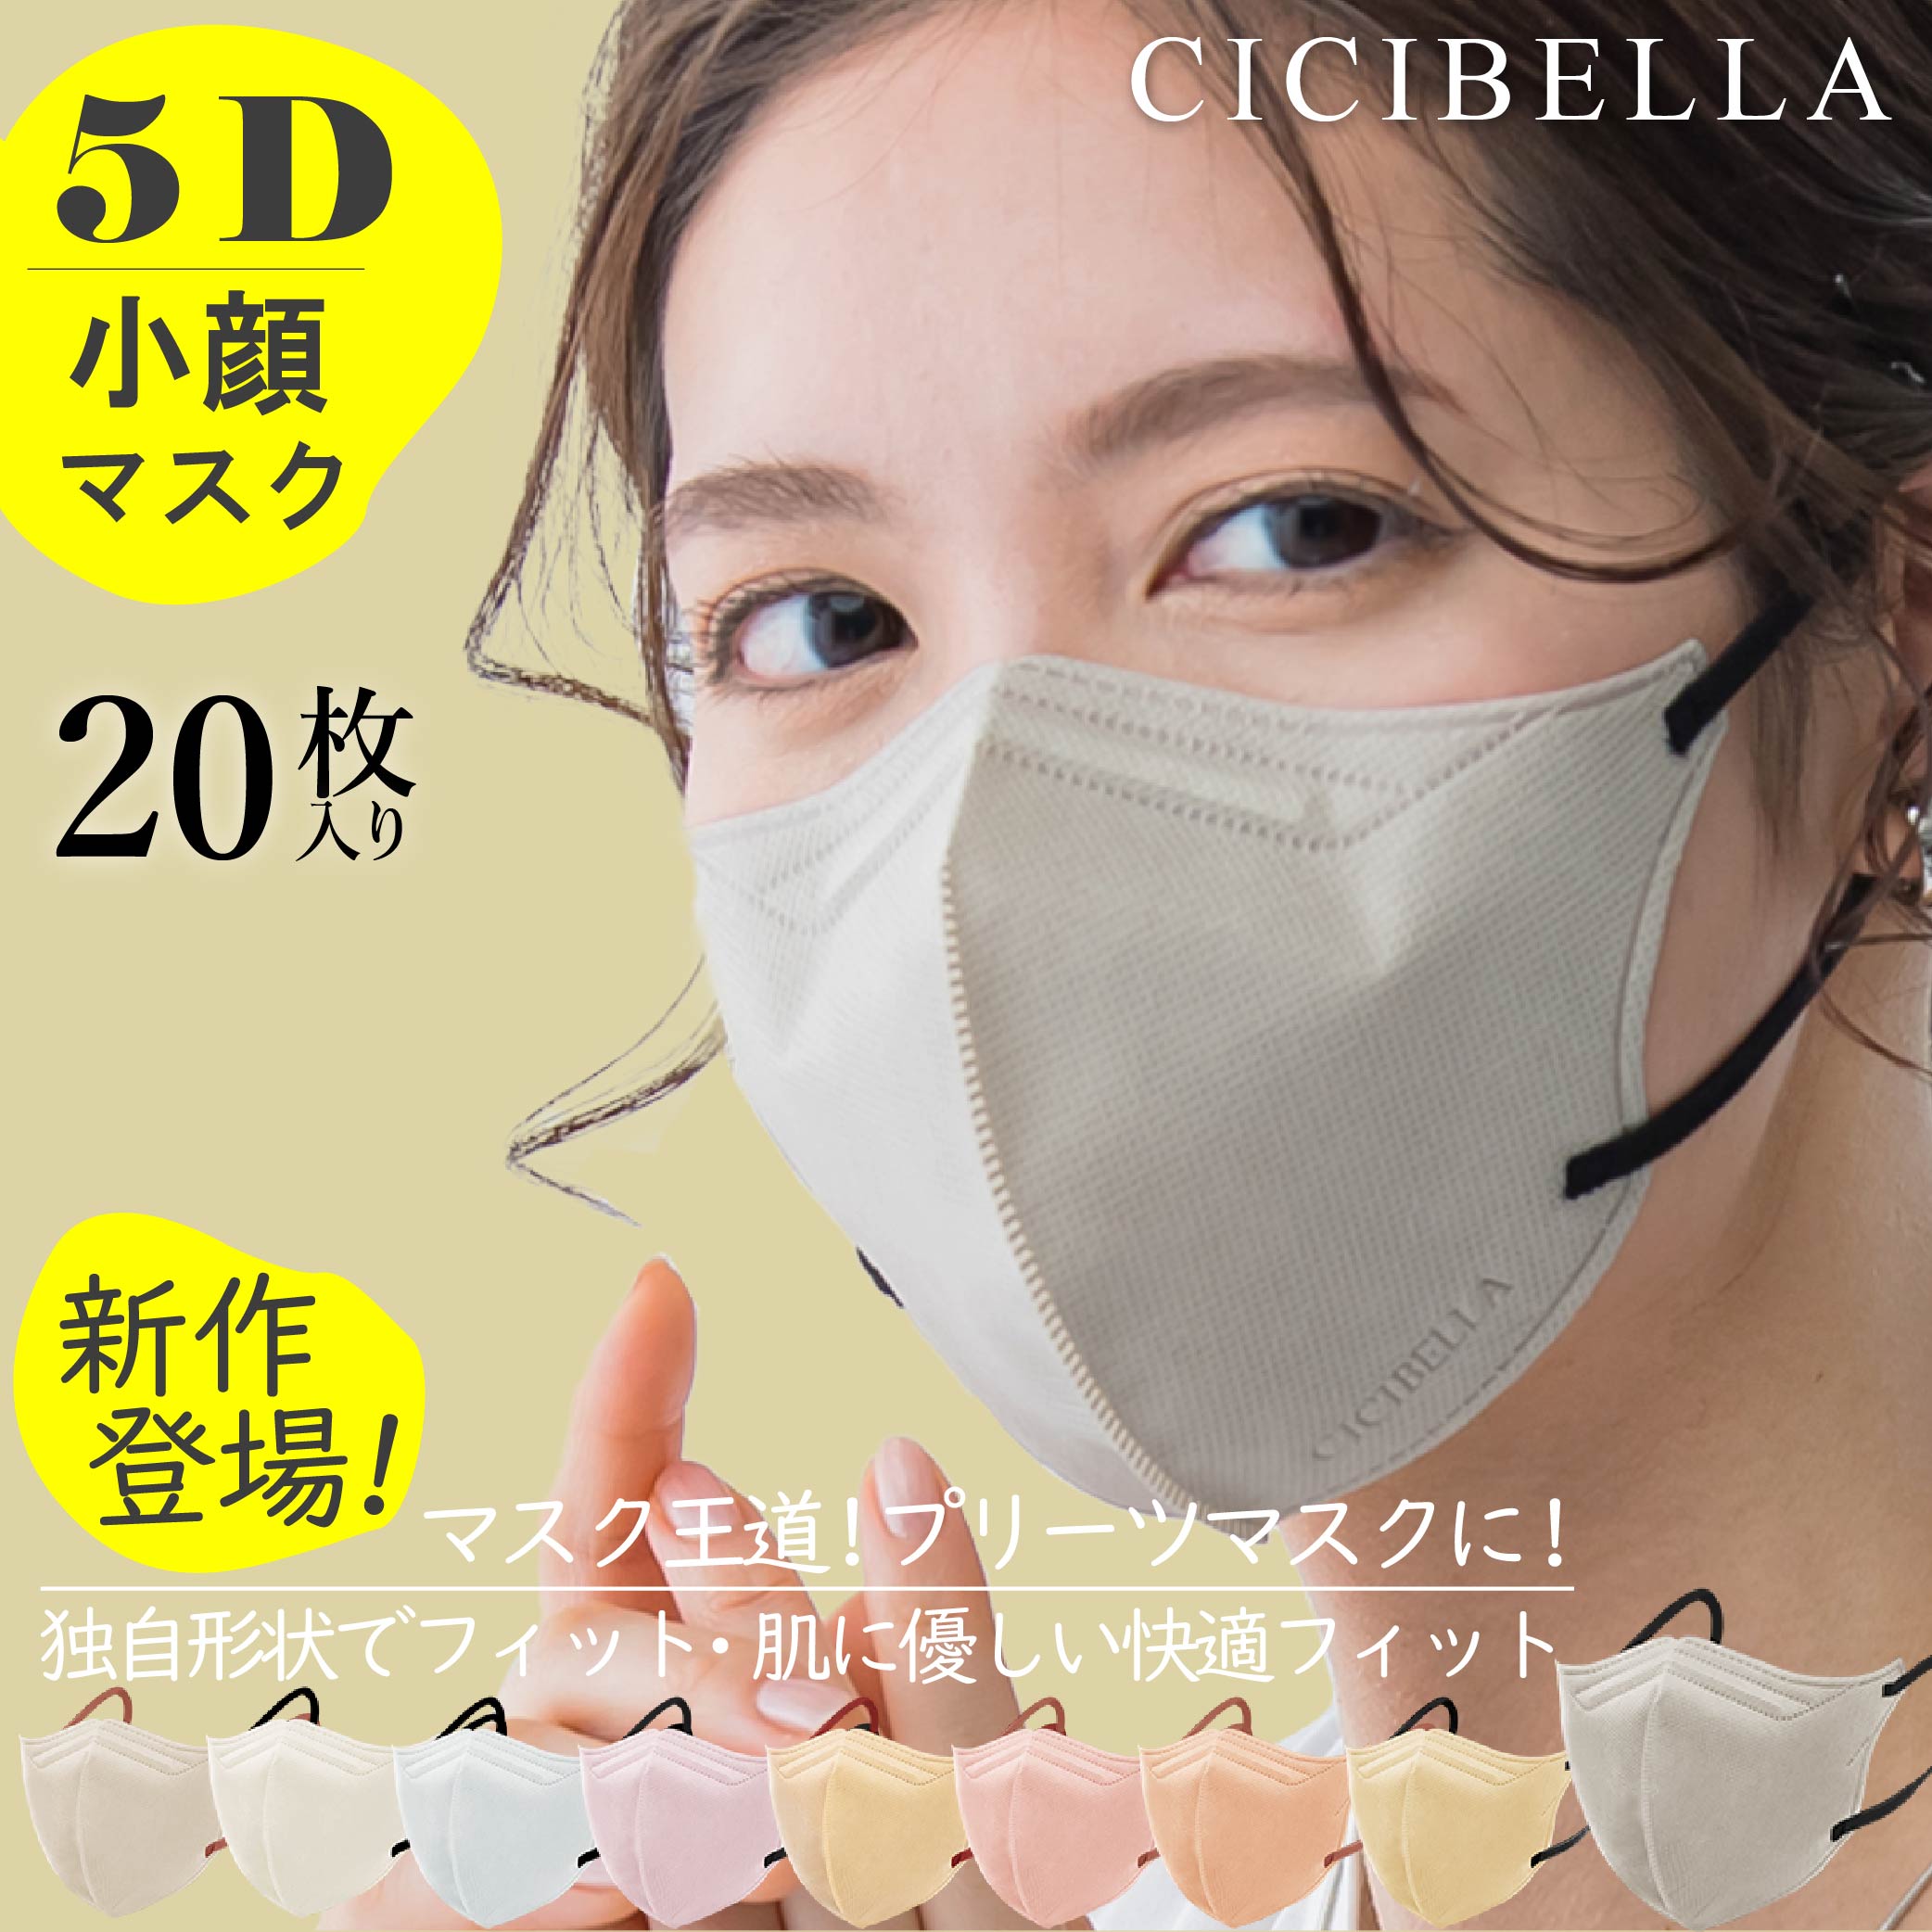 新品 シシベラ cicibella 5D小顔マスク 3色×10枚 バイカラー 通販